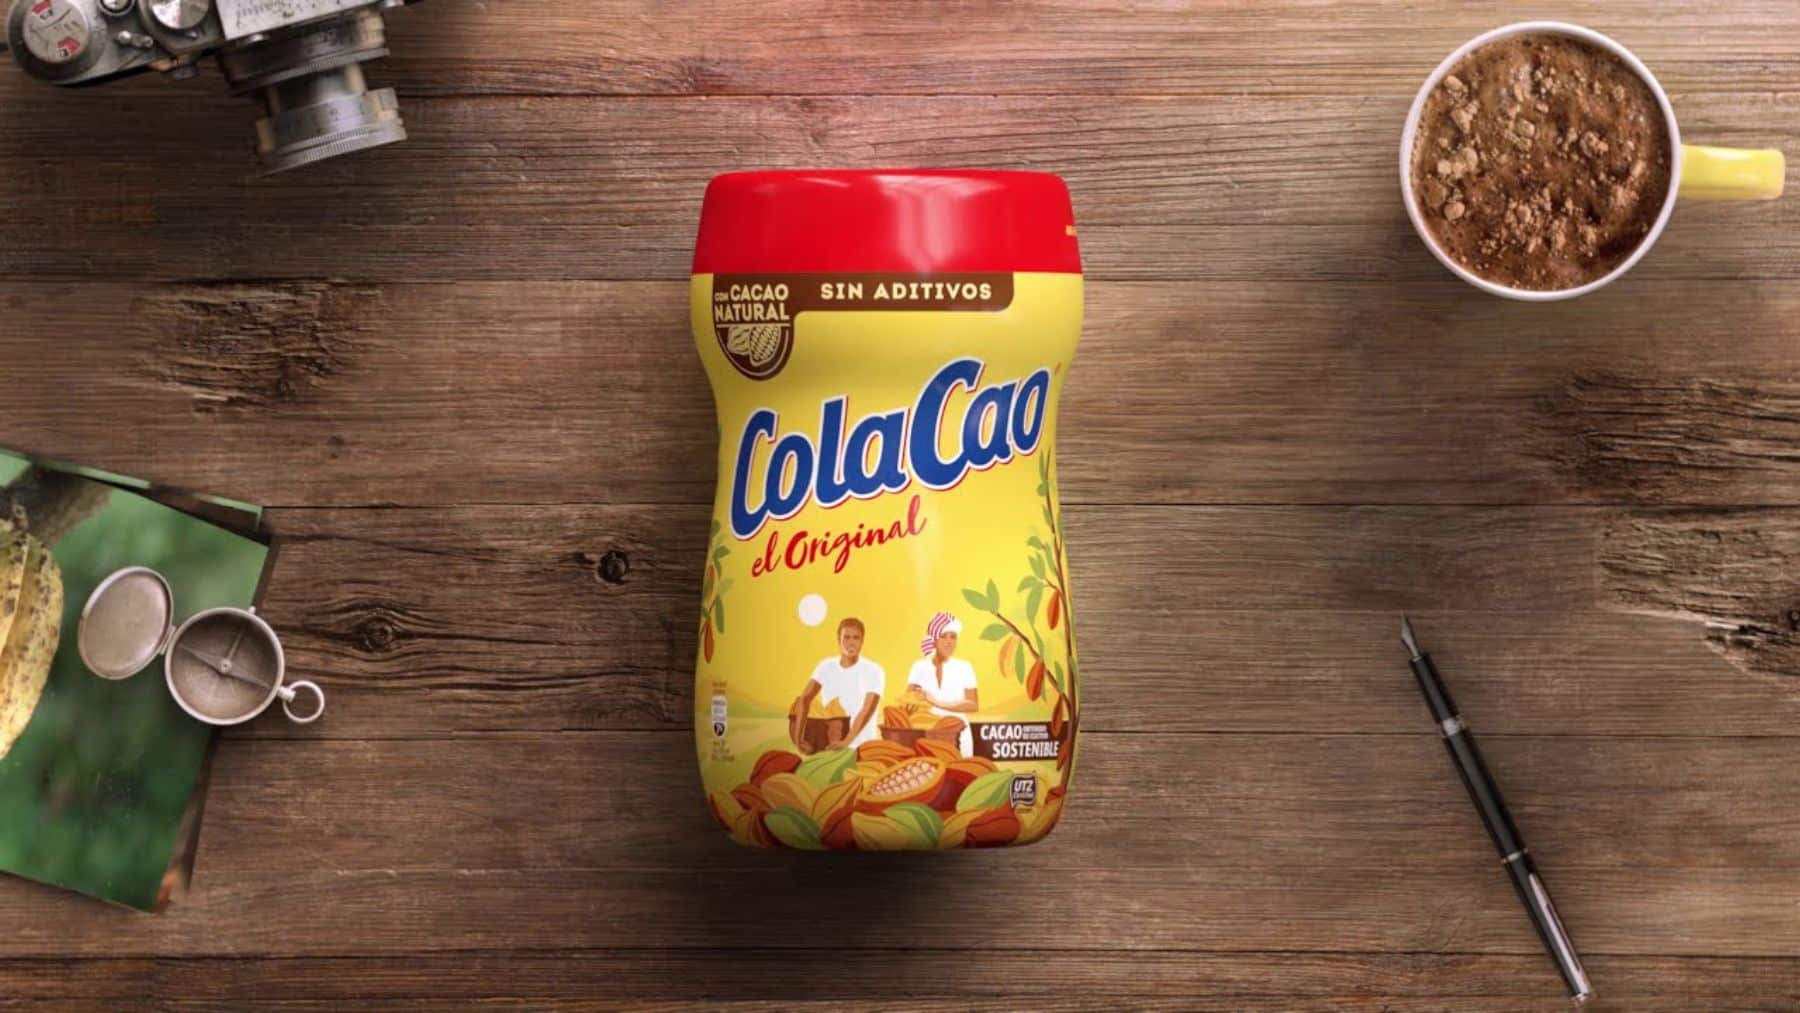 Cacao en polvo soluble COLACAO Original 1,75 Kg.